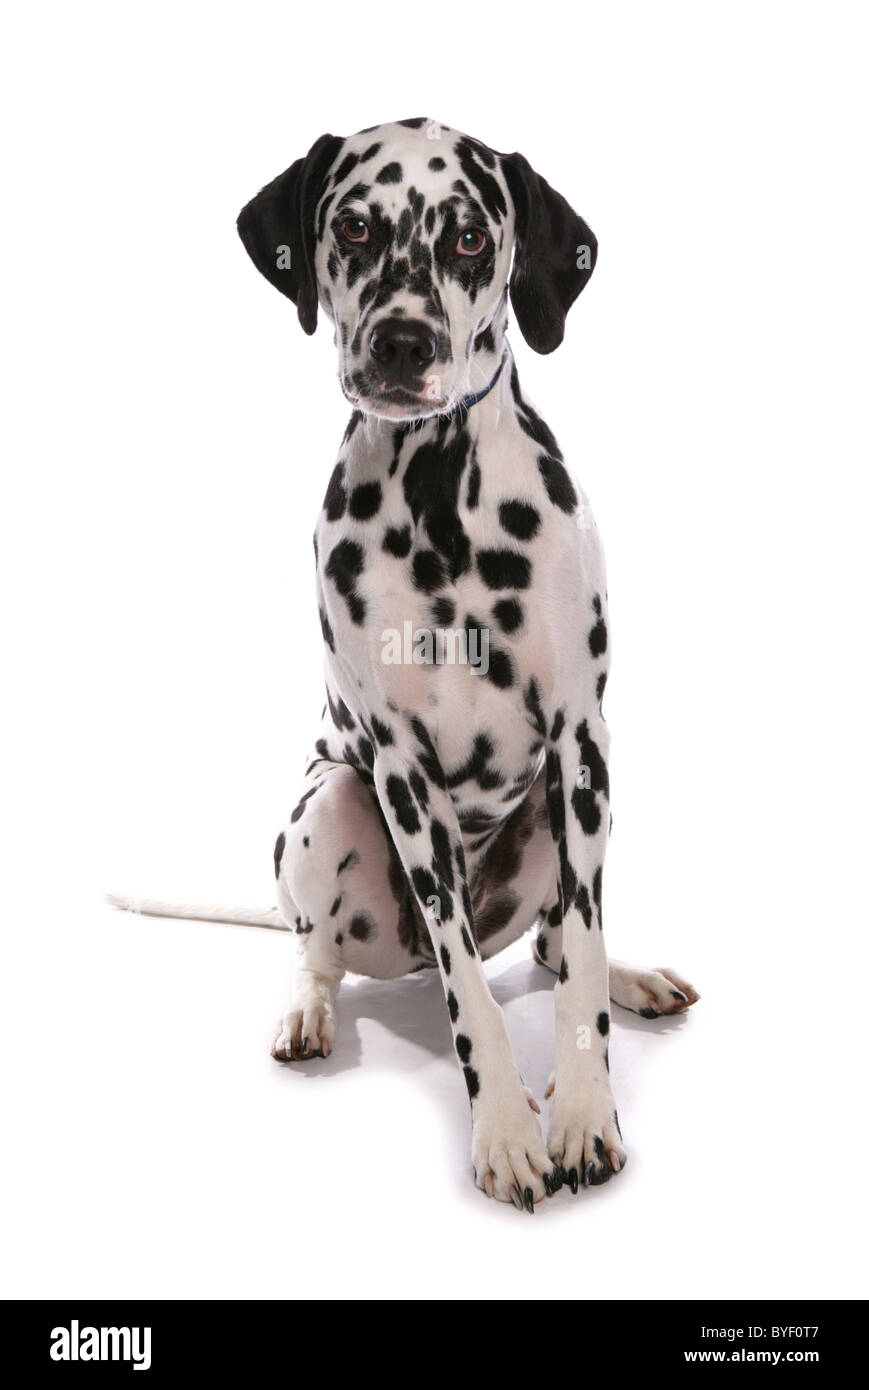 dalmatian dog sitting in studio Stock Photo